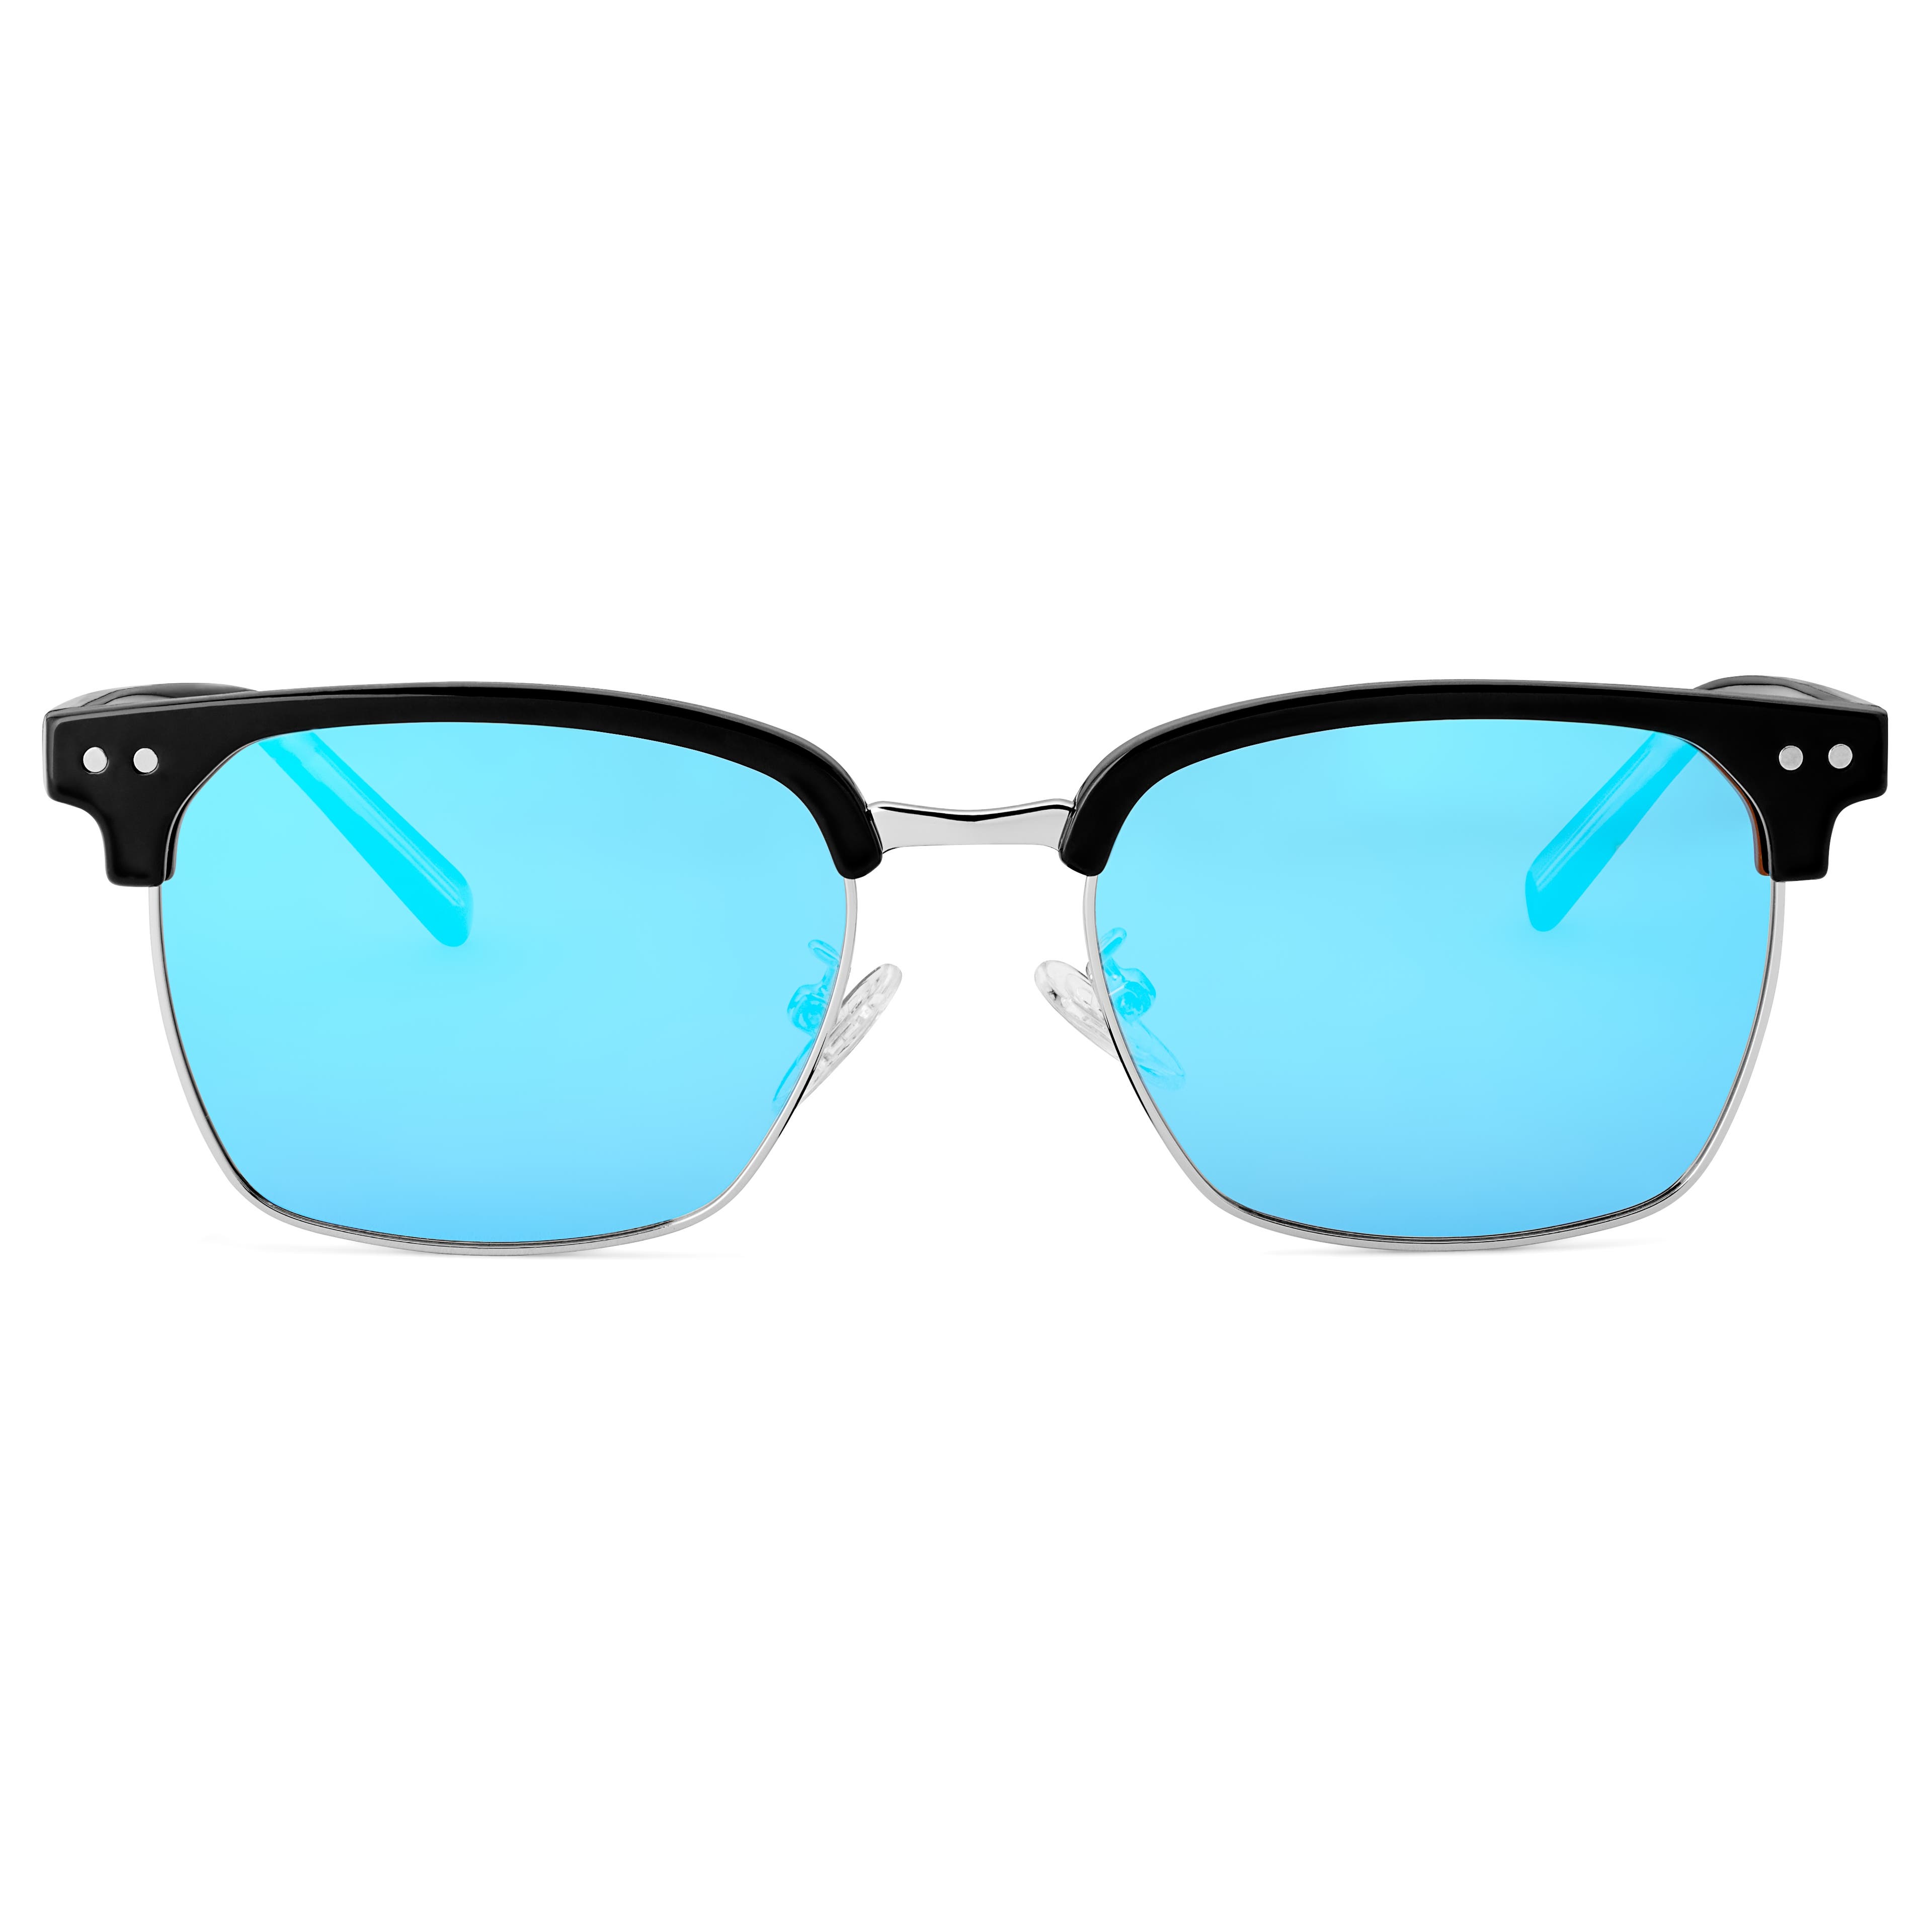 Čierne a modré polarizačné slnečné okuliare v štýle browline